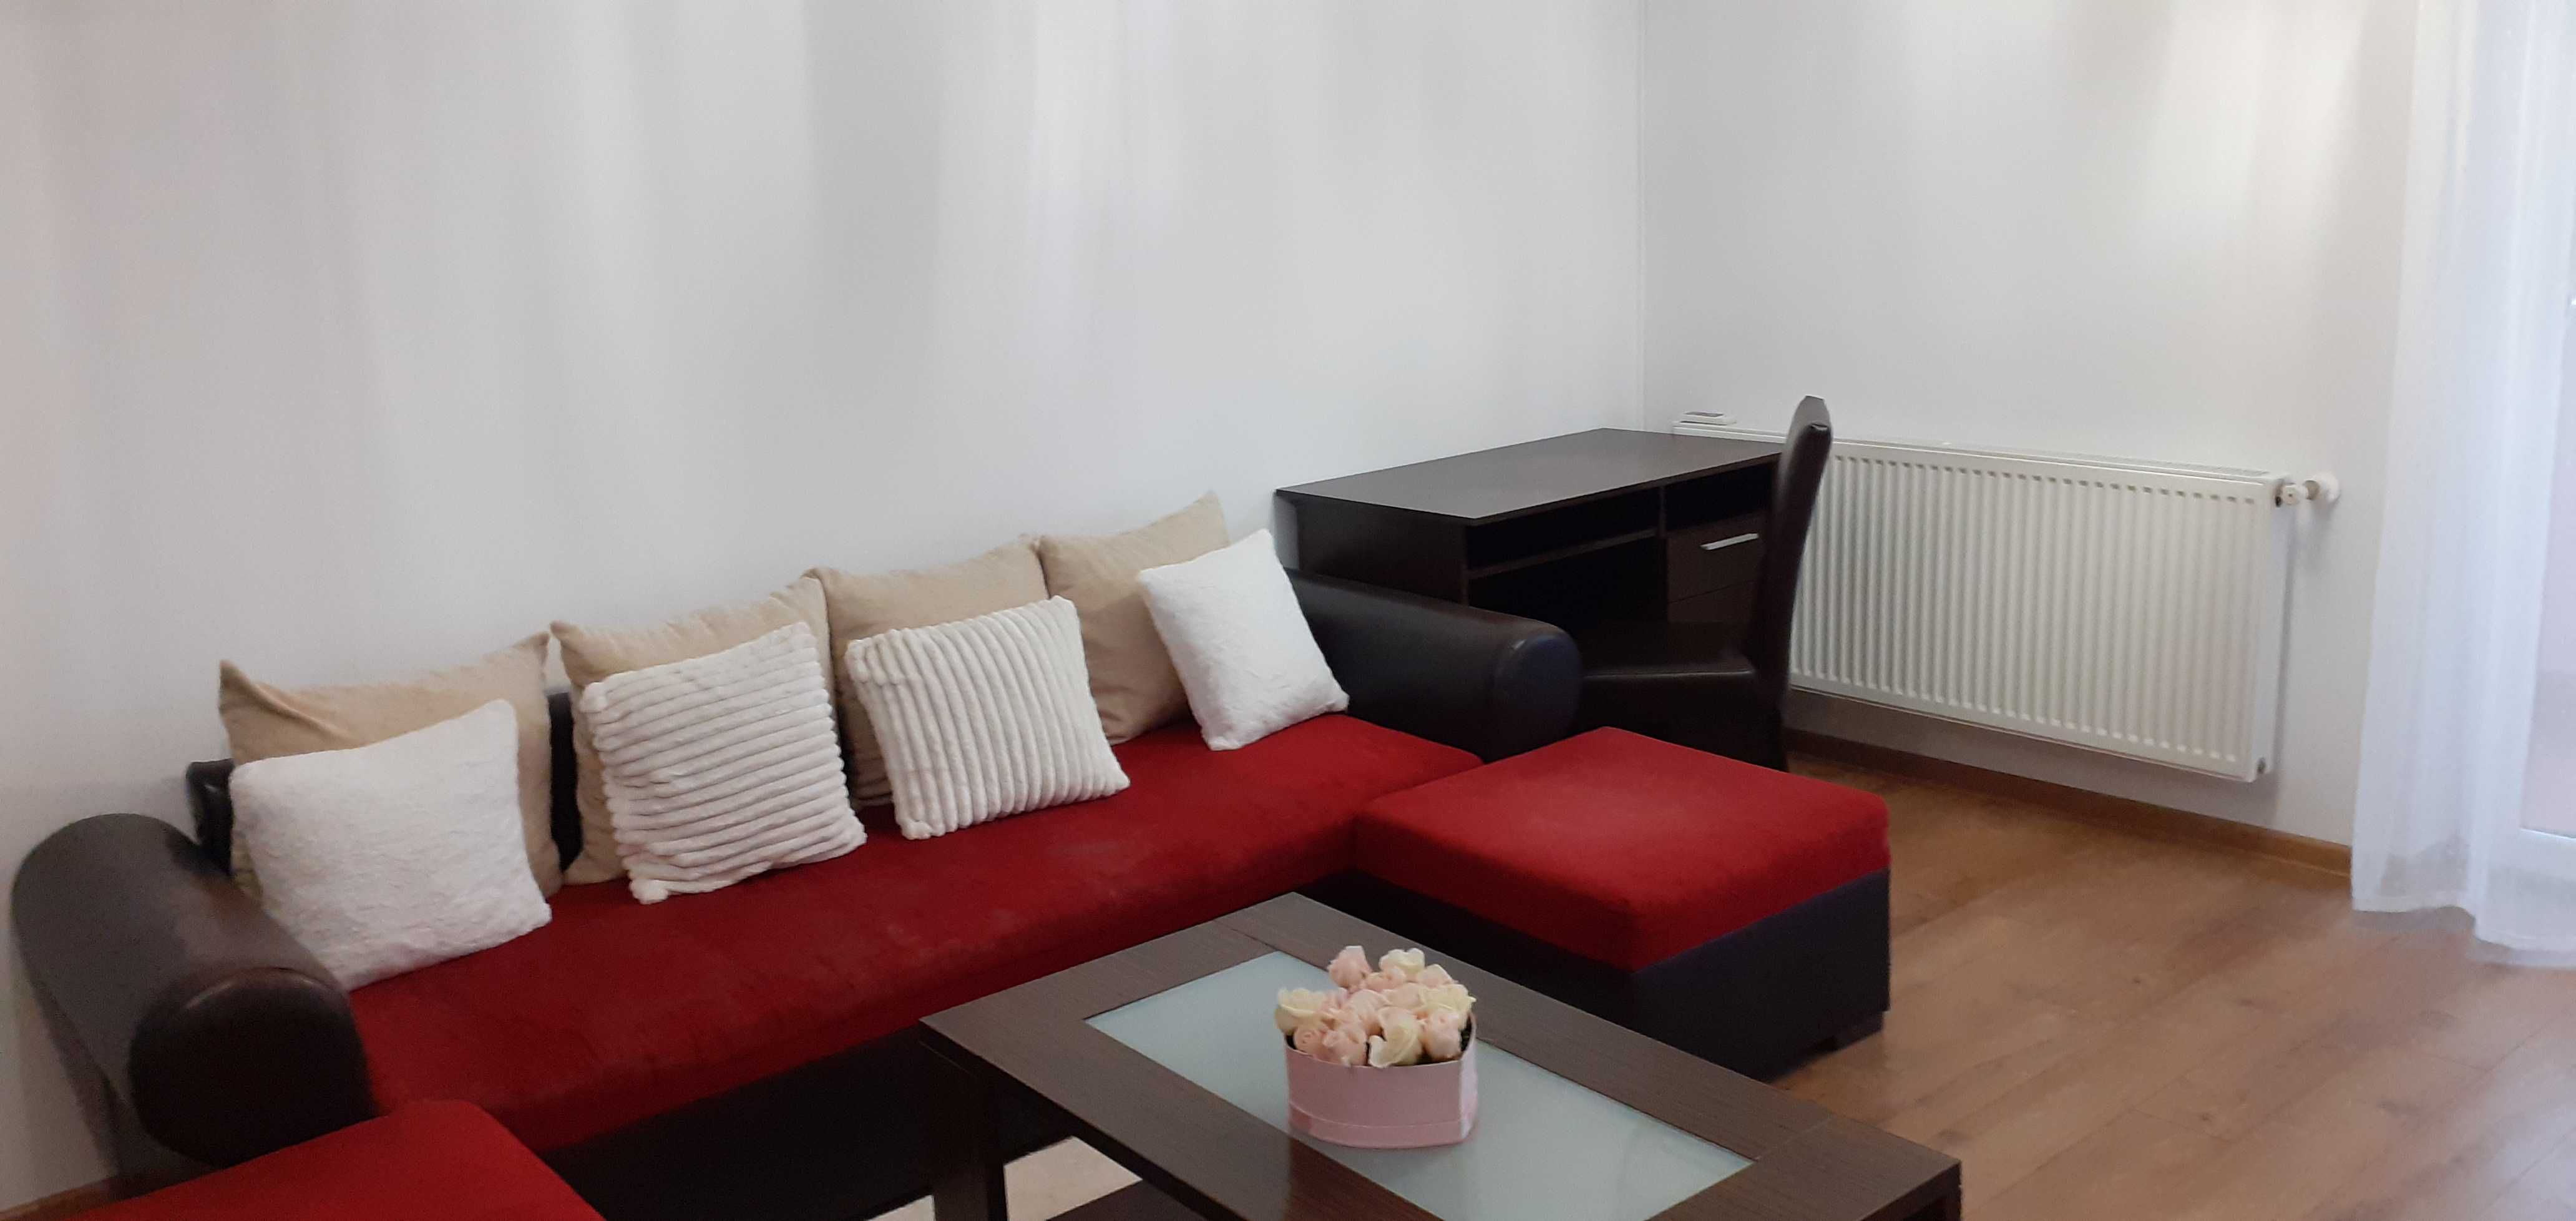 Inchiriez apartament modern 2 camere bloc nou Turda Noua + loc parcare